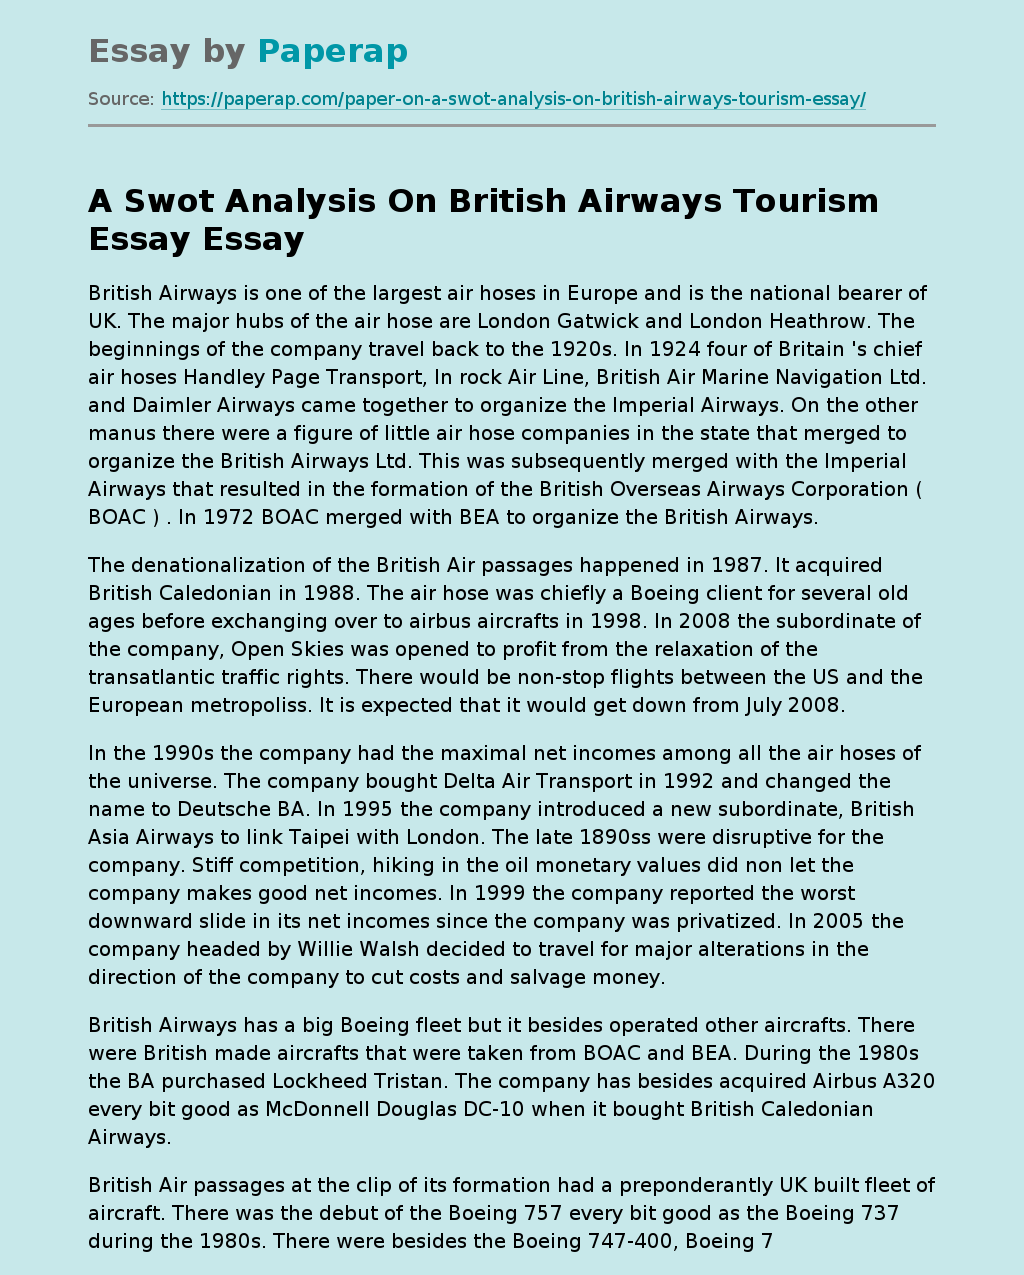 A Swot Analysis On British Airways Tourism Essay